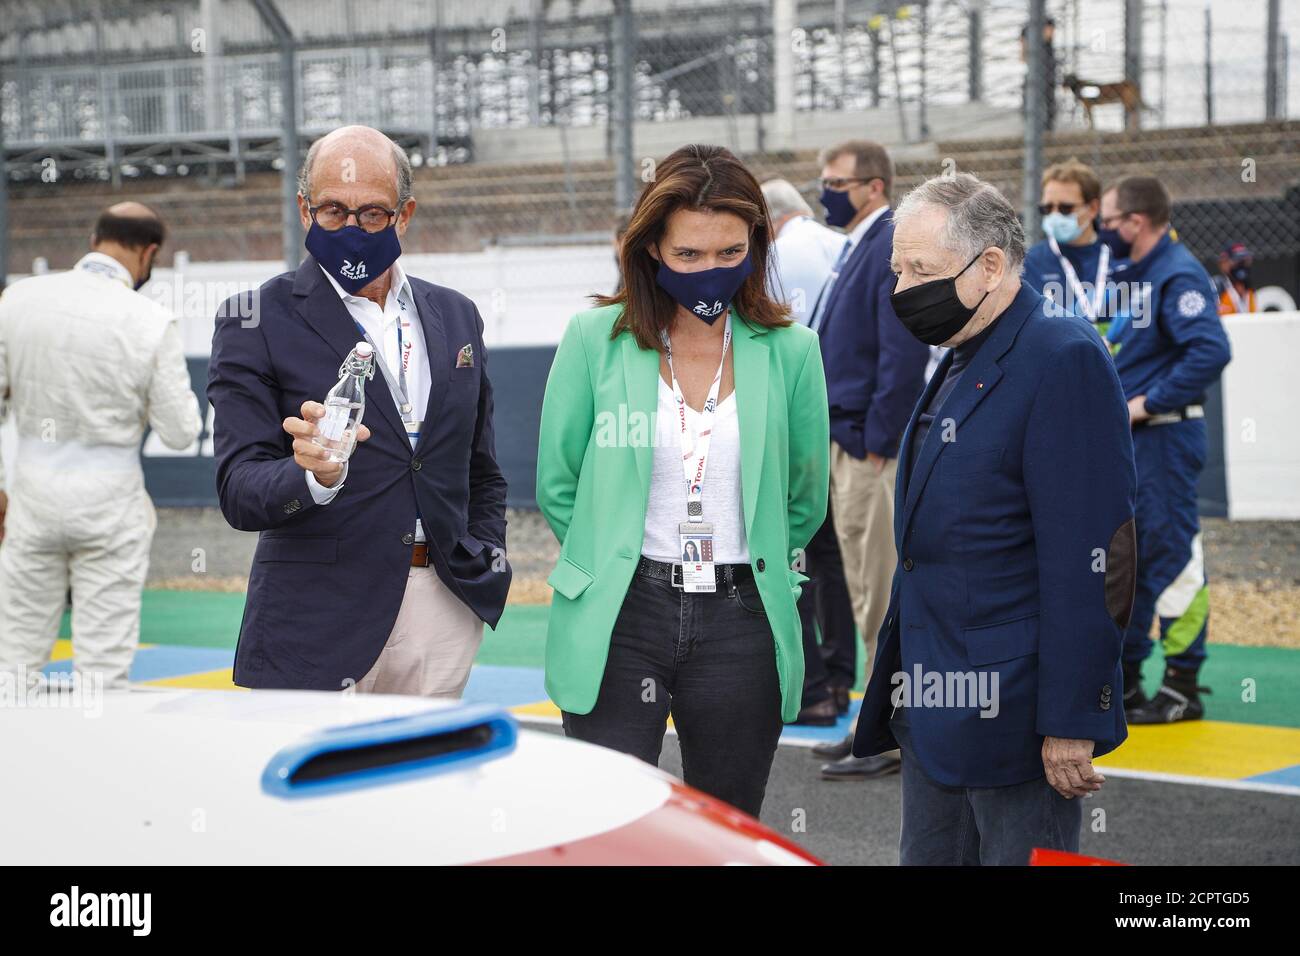 Le Mans, France. 19 septembre 2020. Richard mille, Christelle Morancais et  Jean Todt pendant les 2020 24 heures du Mans, 7e tour du Championnat du  monde d'Endurance 2019-20 de la FIA sur